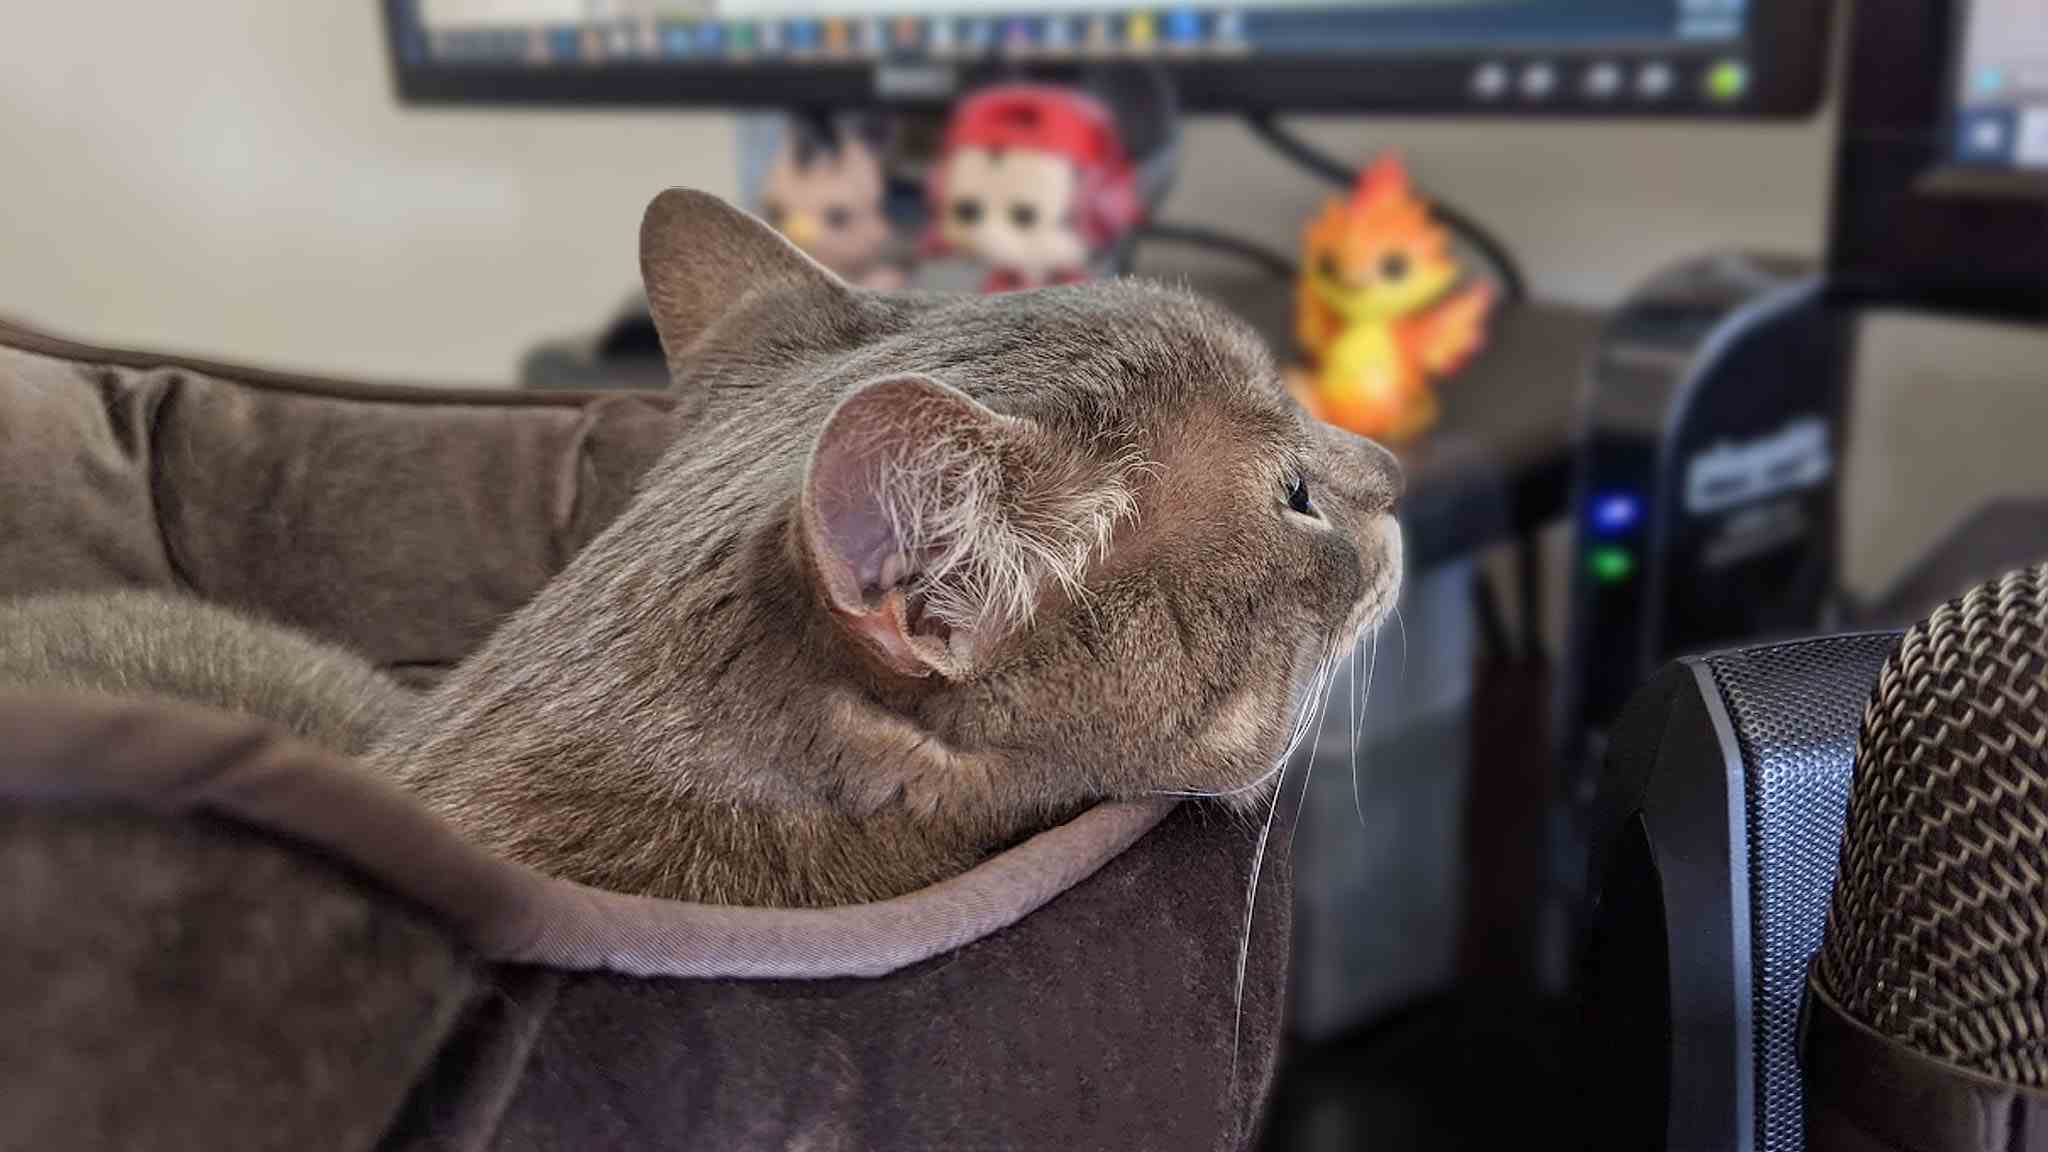 Bilgisayar masasındaki kedi yatağındaki kedi.